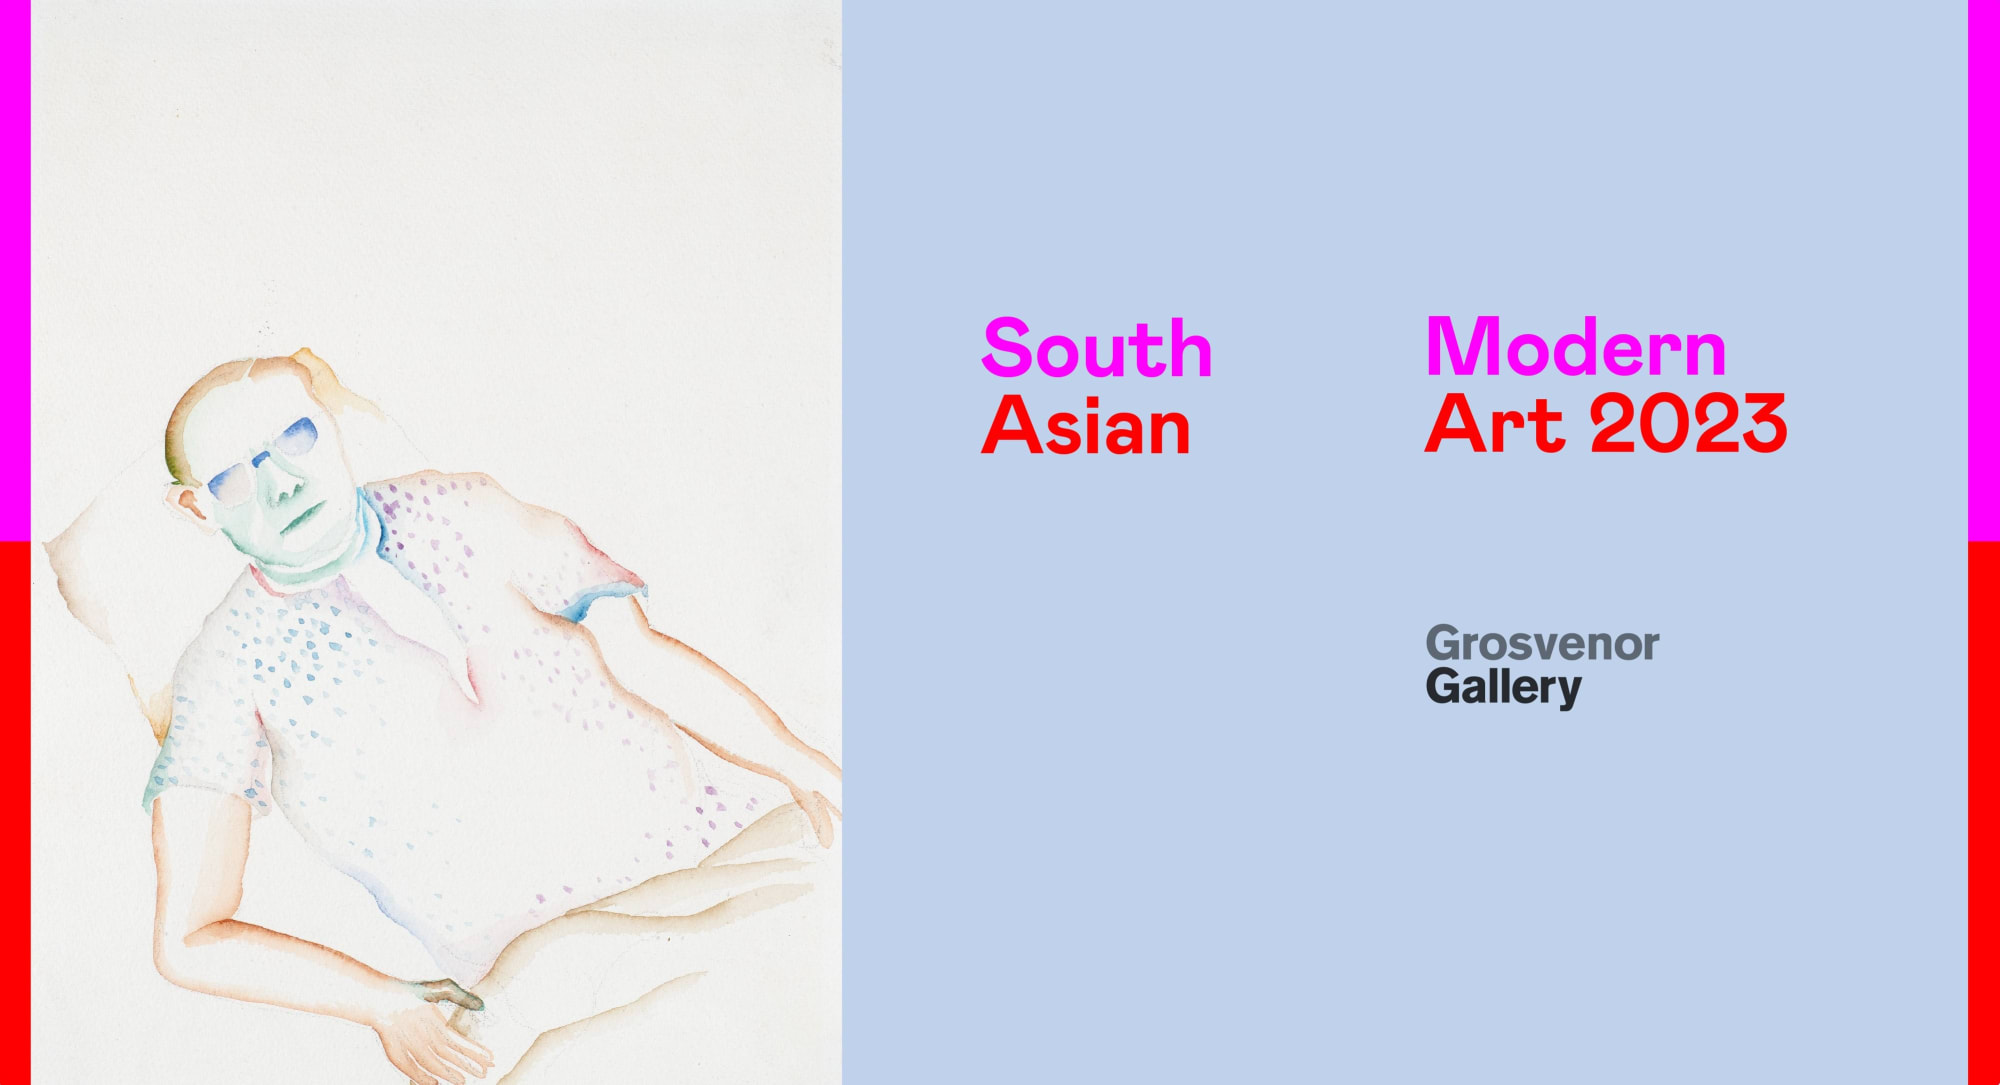 South Asian Modern Art 2023